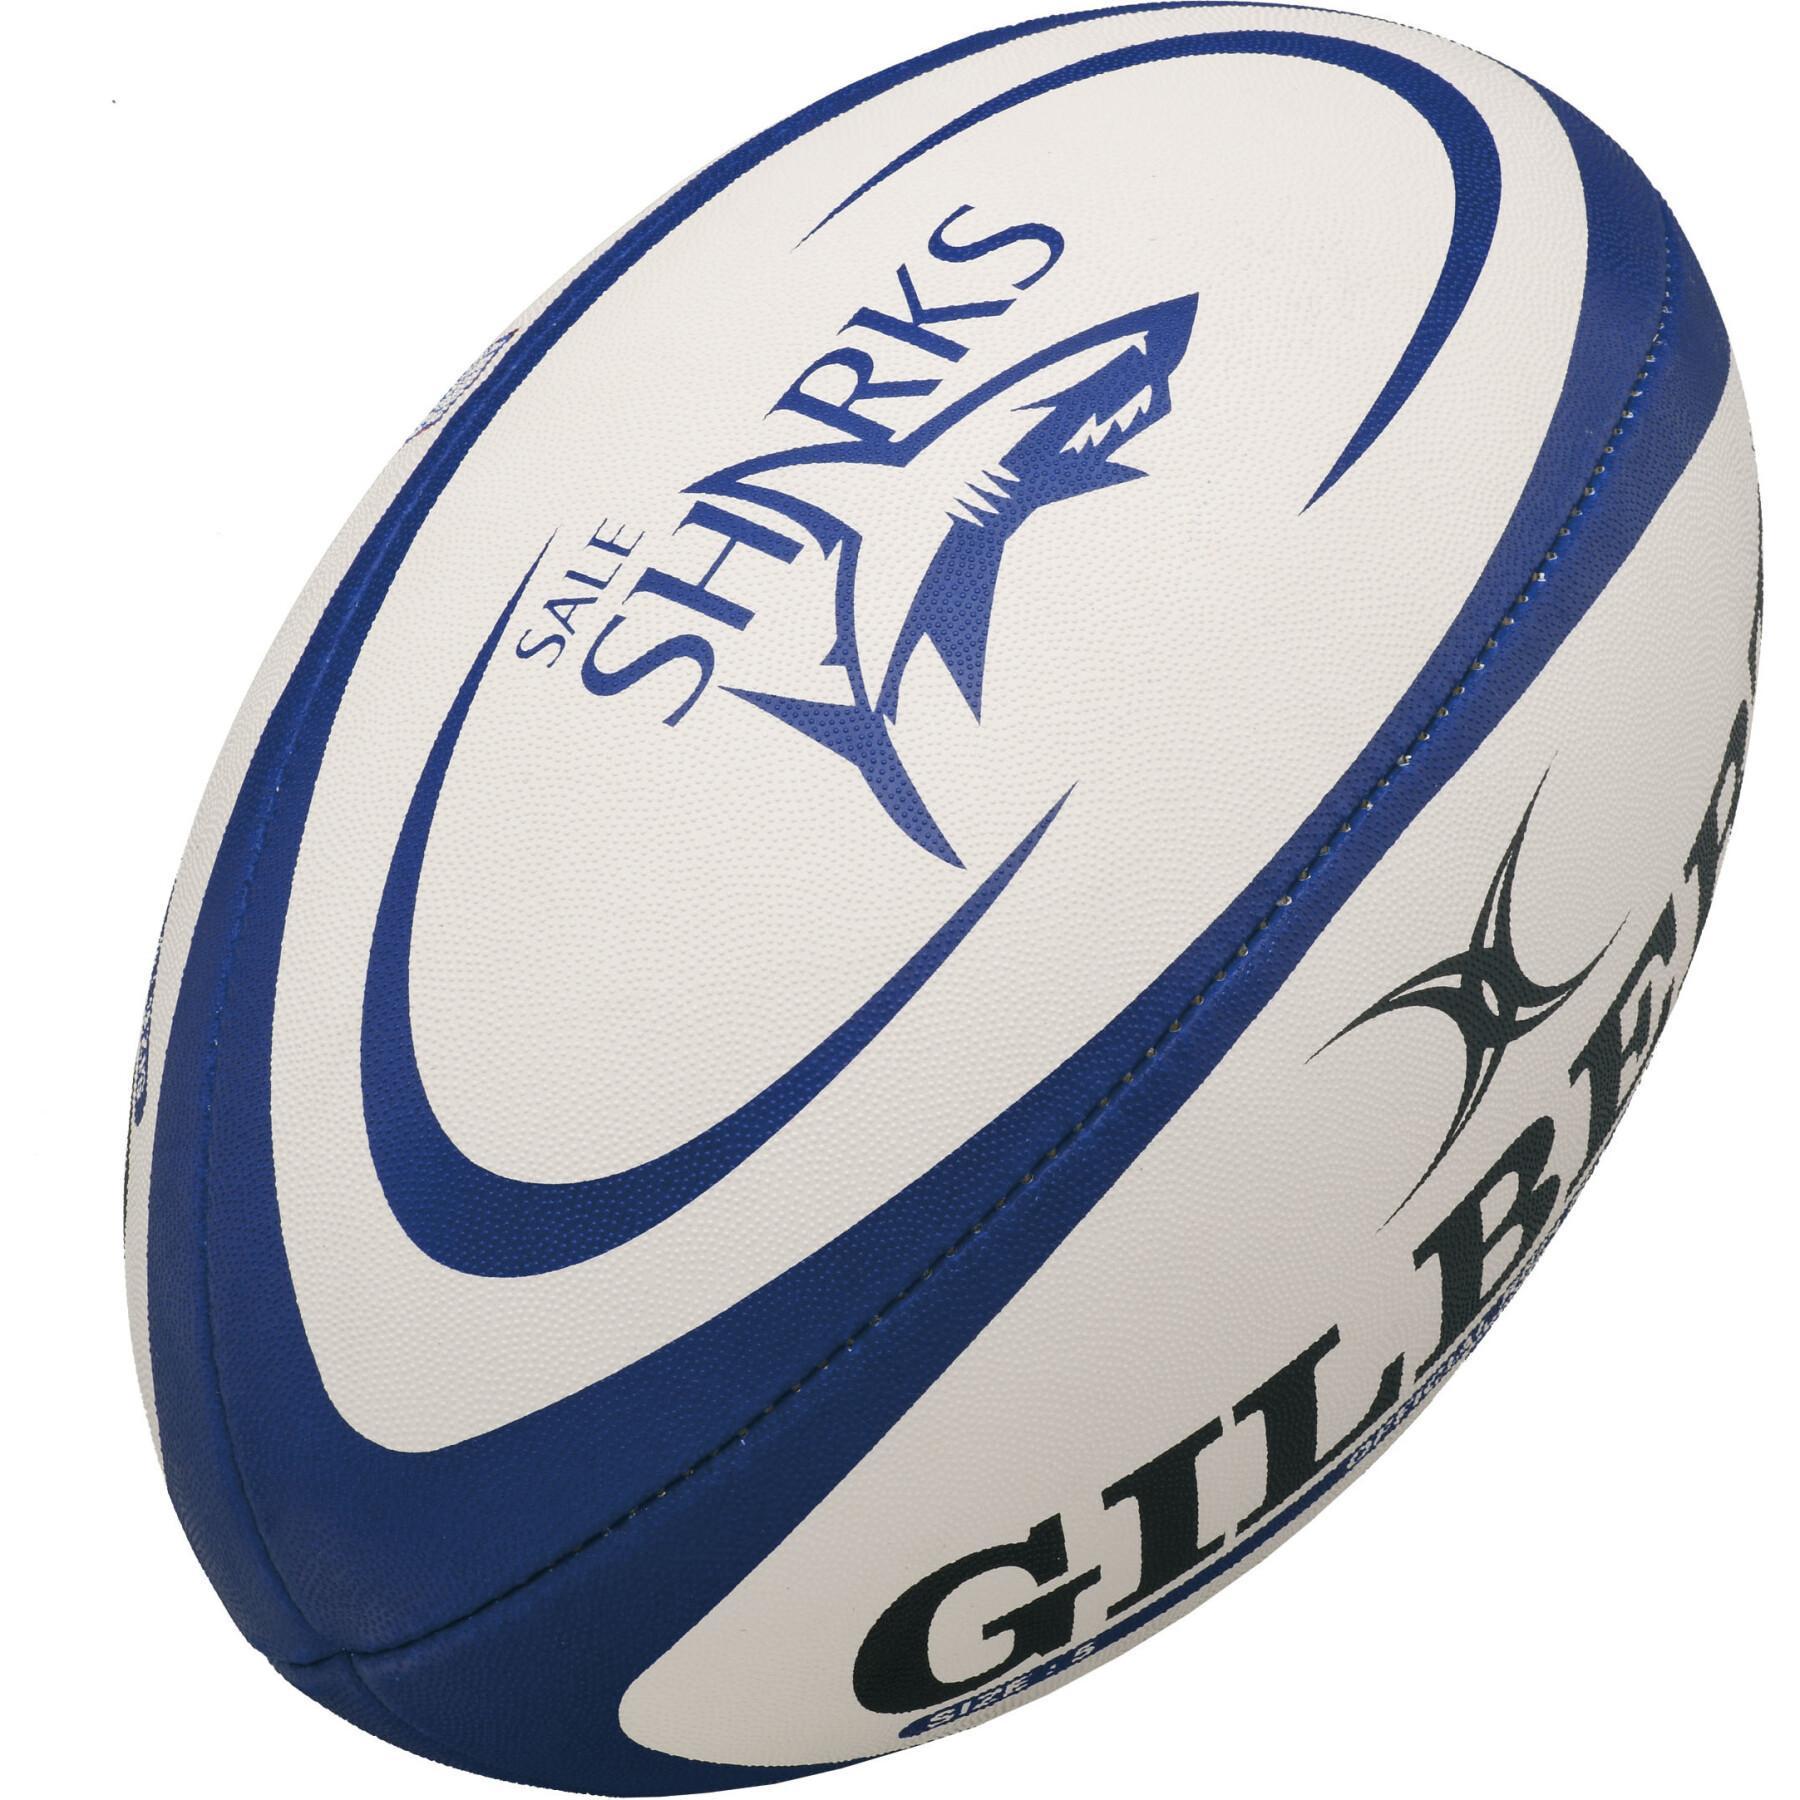 Rugby ball Gilbert Sale Sharks